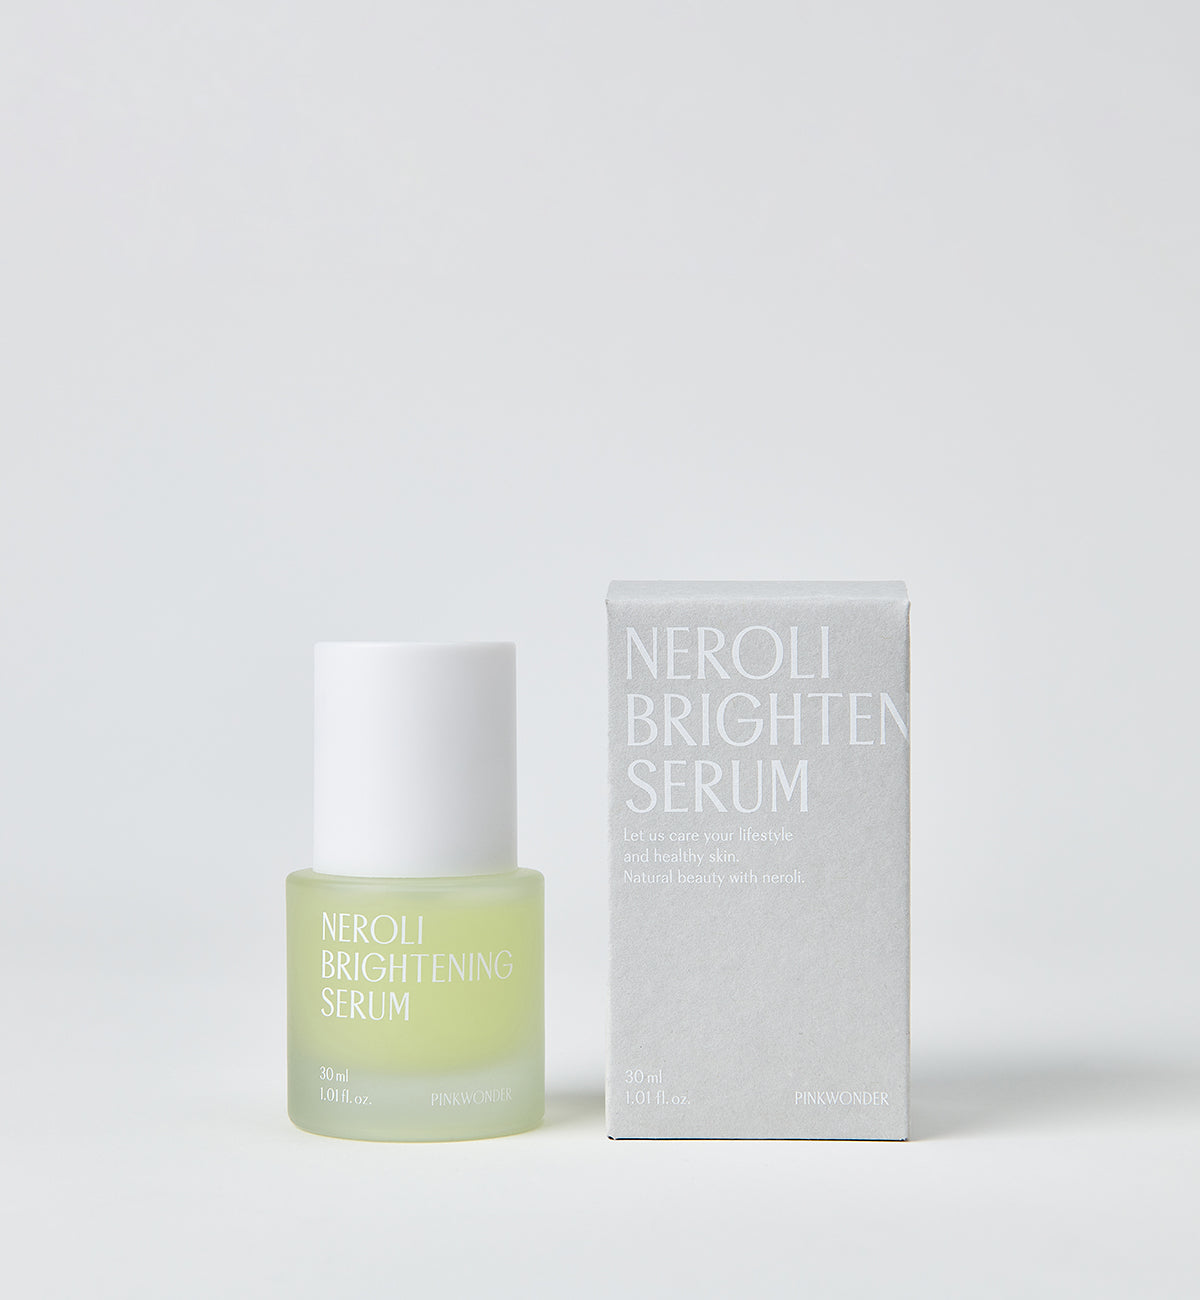 Neroli Brightening Serum